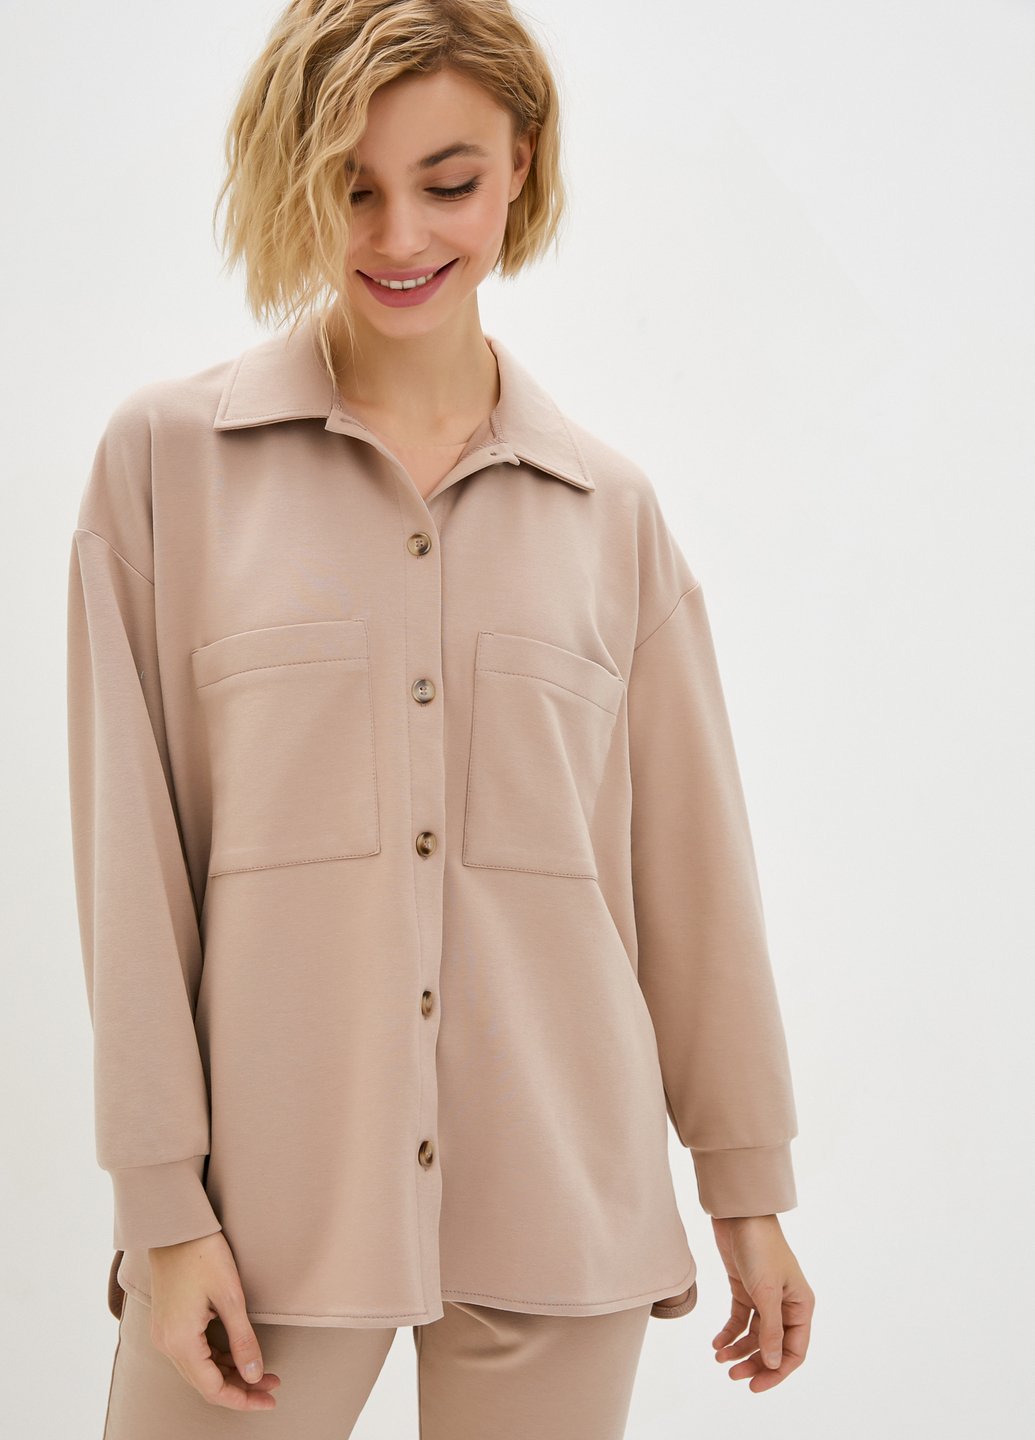 Купить Рубашка женская трикотажная оверсайз Merlini Йорк 200000060 - Бежевый, 42-44 в интернет-магазине